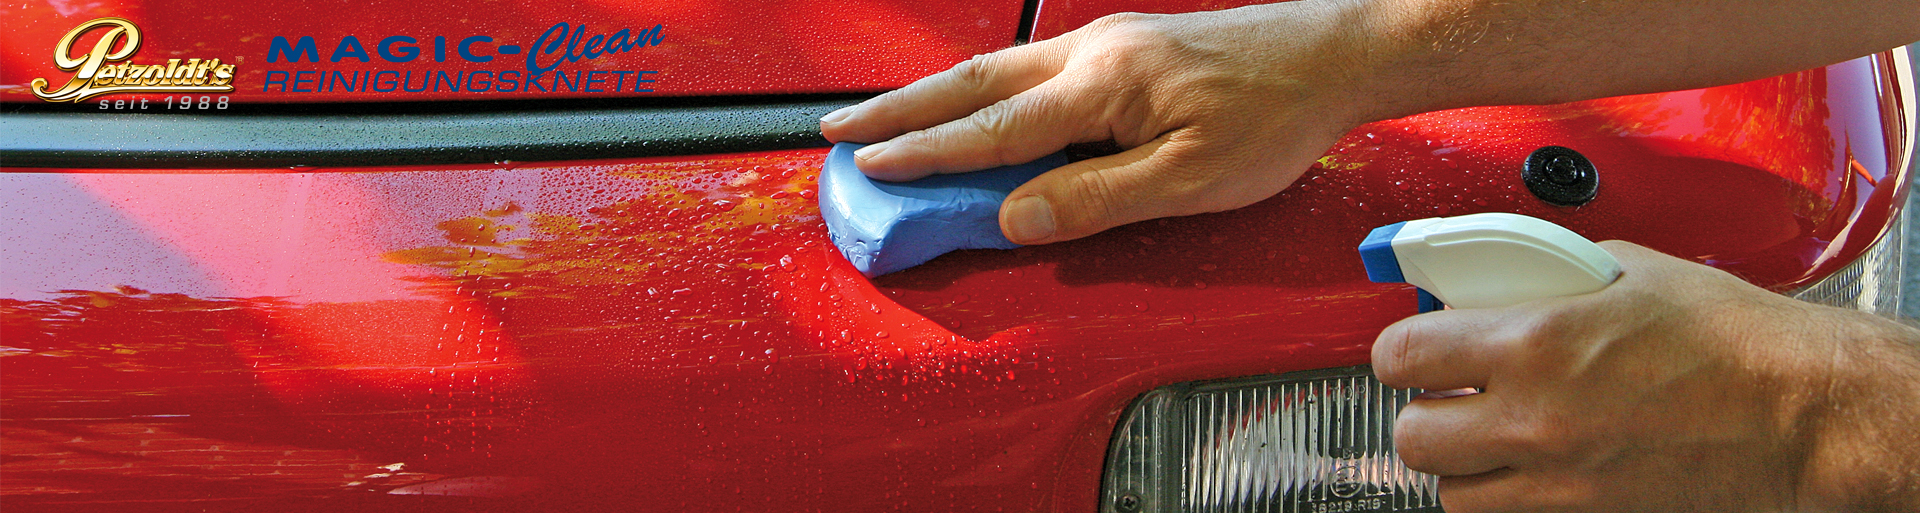 Kaufen Sie Petzoldt's Reinigungsknete Set, die beste im Test zur Fahrzeugpflege